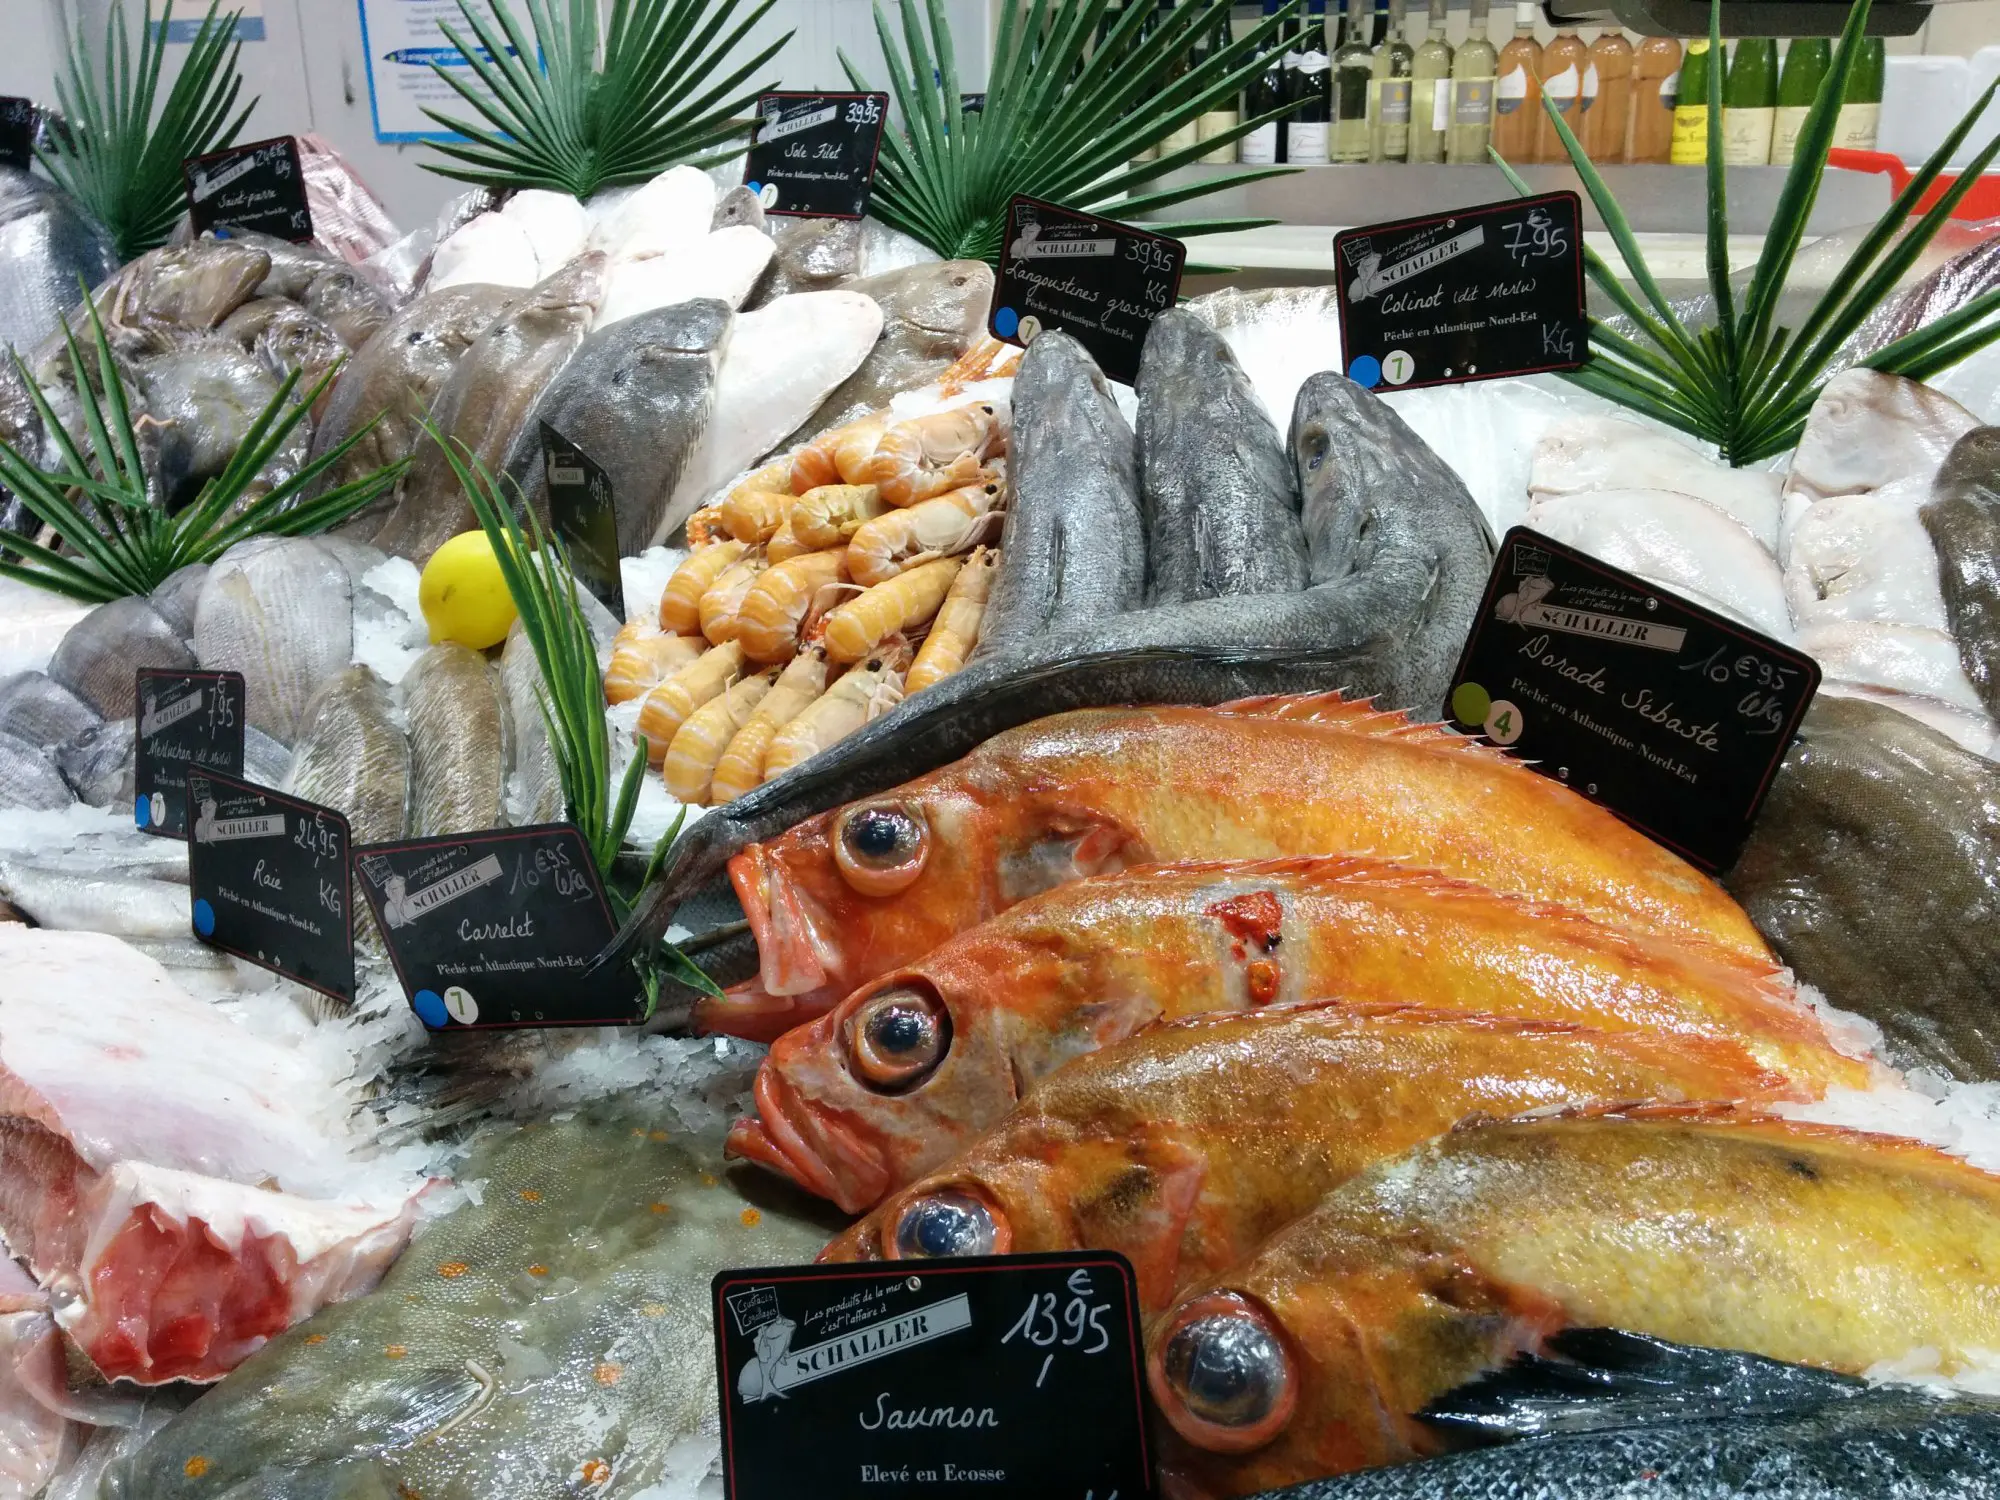 שפע דגים ופירות ים בכיכר העיר. לבשל מוצרים משובחים כאלה היא הרפתקה גסטרונומית מלהיבה, אותה יכול התייר לחוות רק במטבח המוטורהום